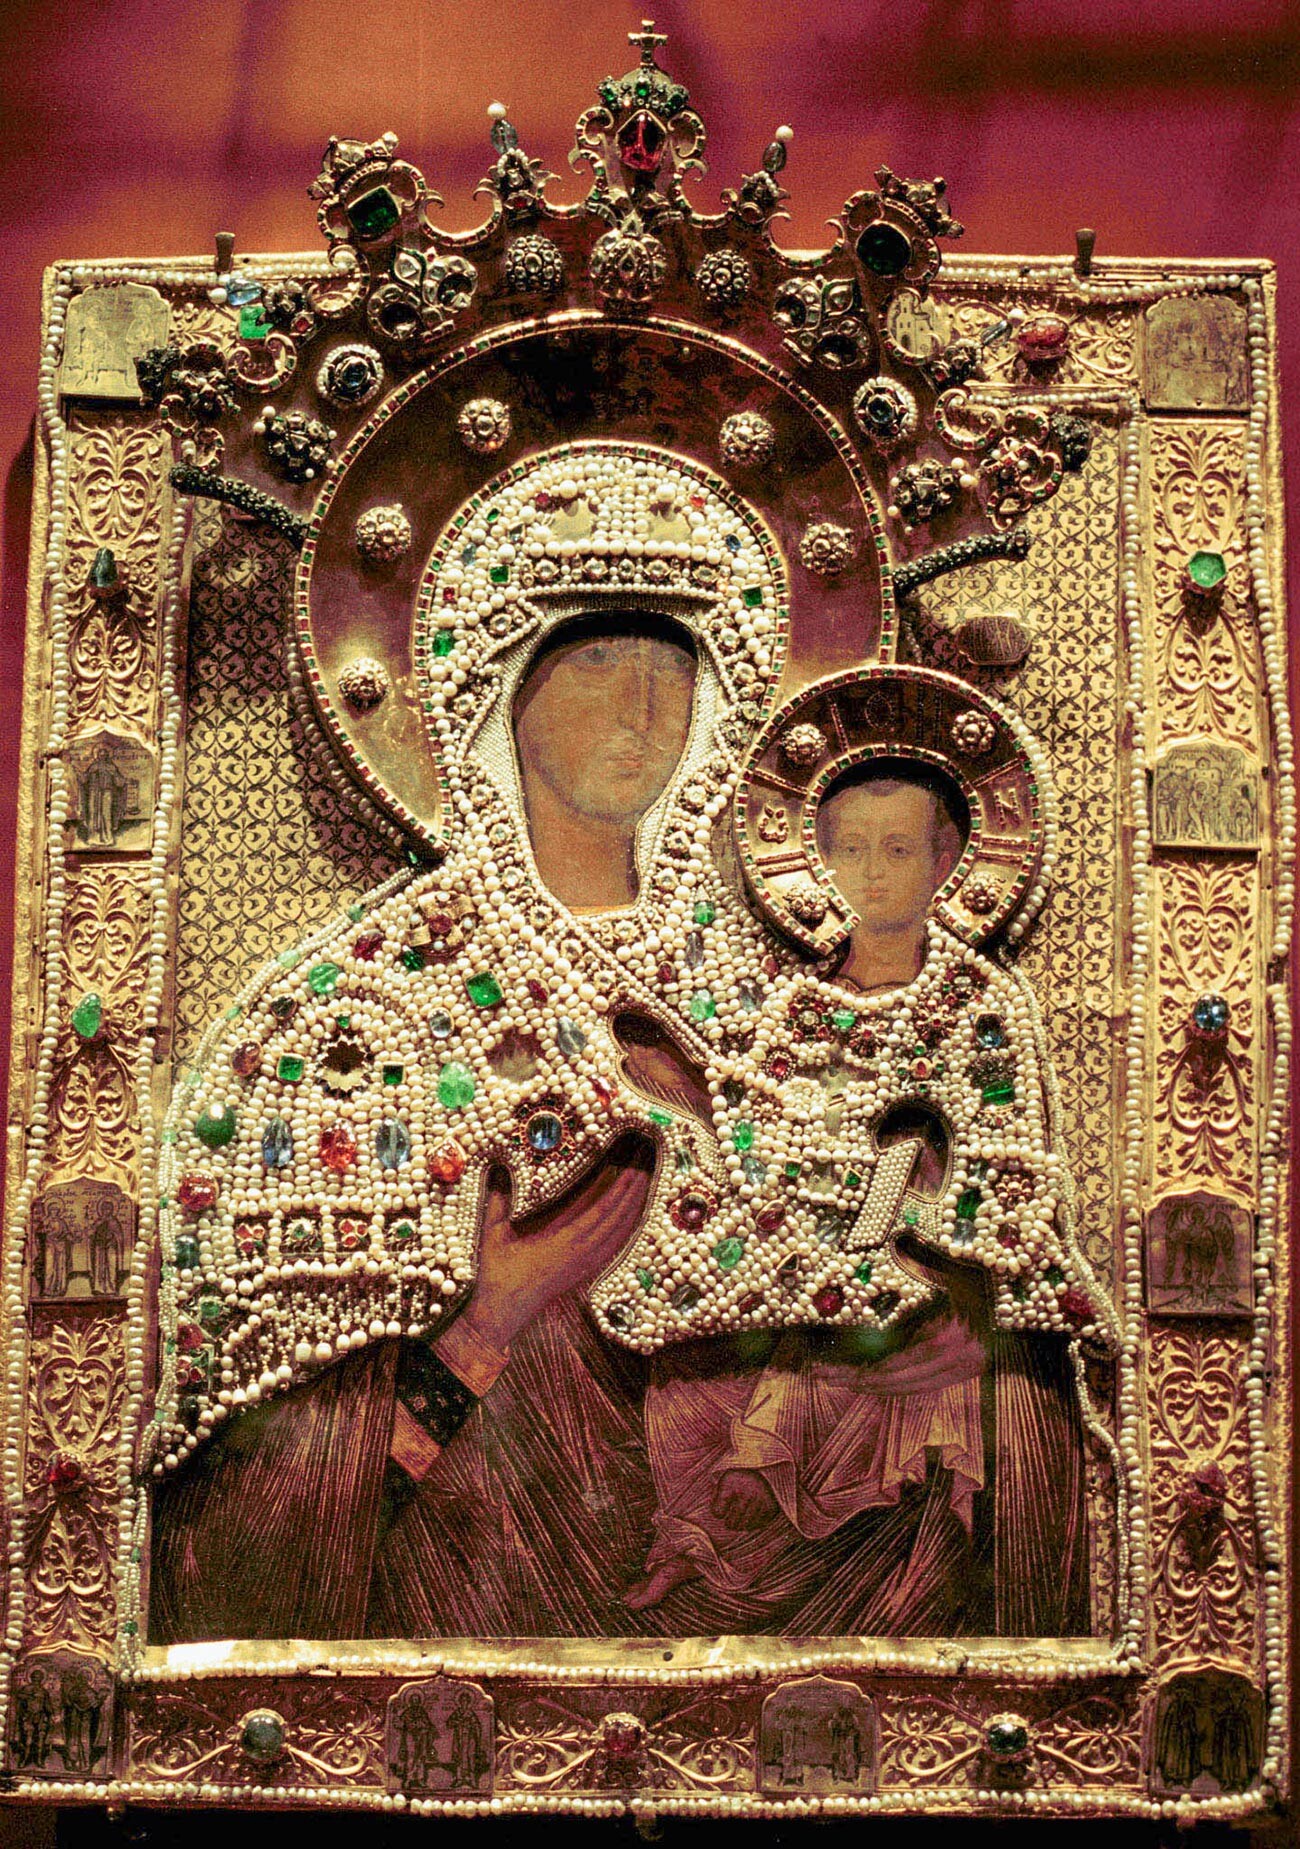 Ikone der Muttergottes von Wladimir, 18. Jahrhundert, aus der Sammlung der Moskauer Kreml-Museen.